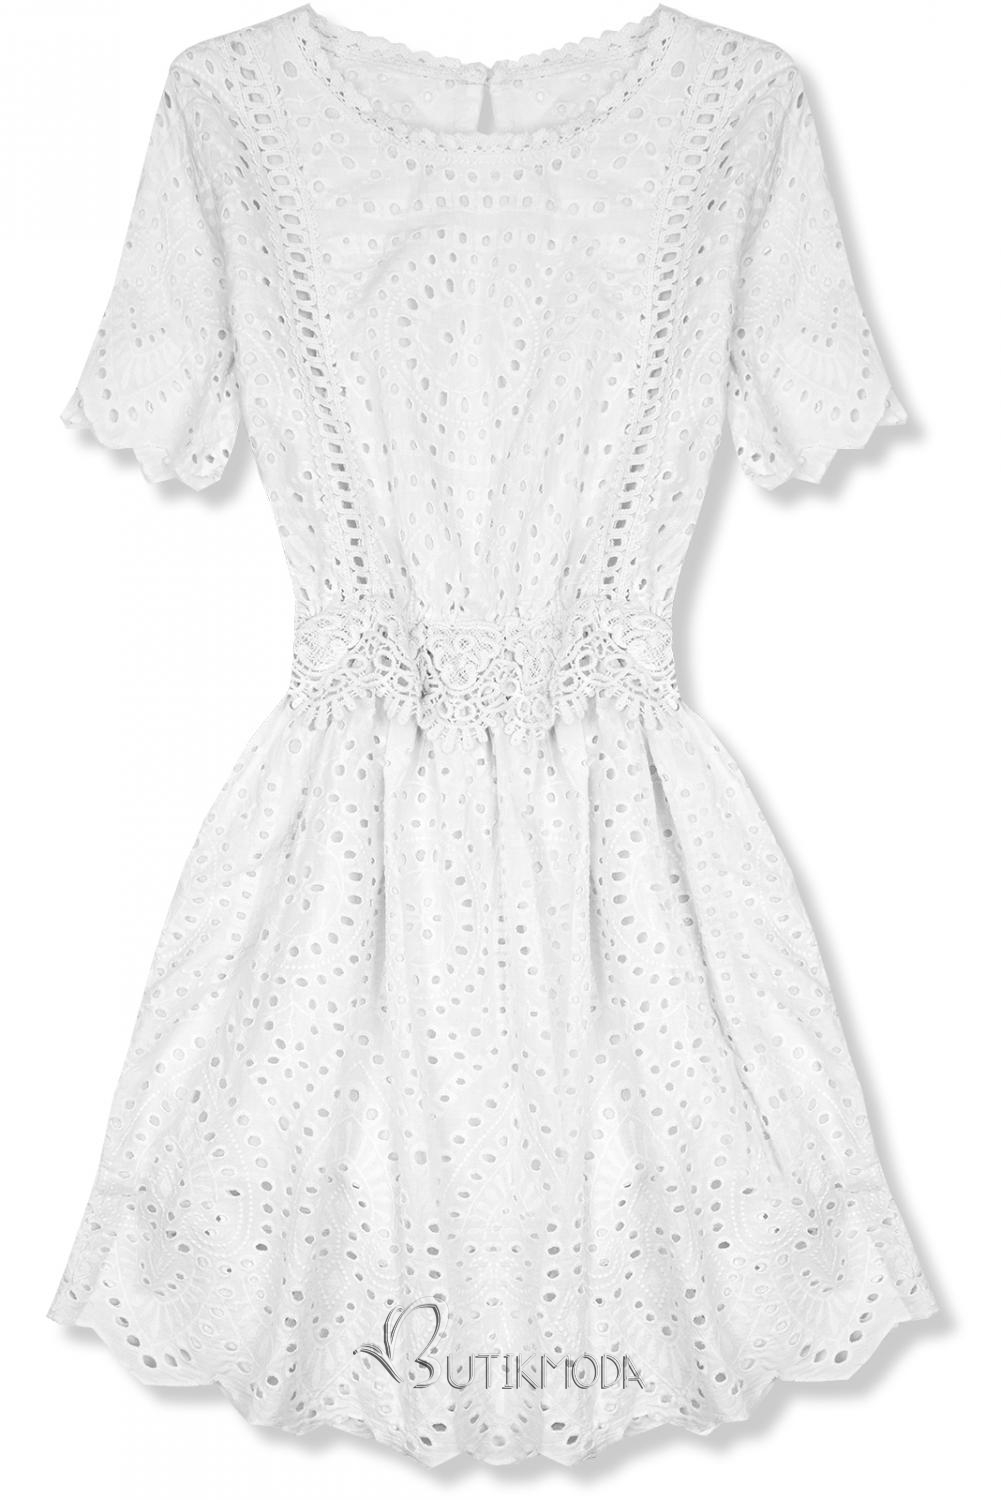 Kleid mit Lochstickerei weiß